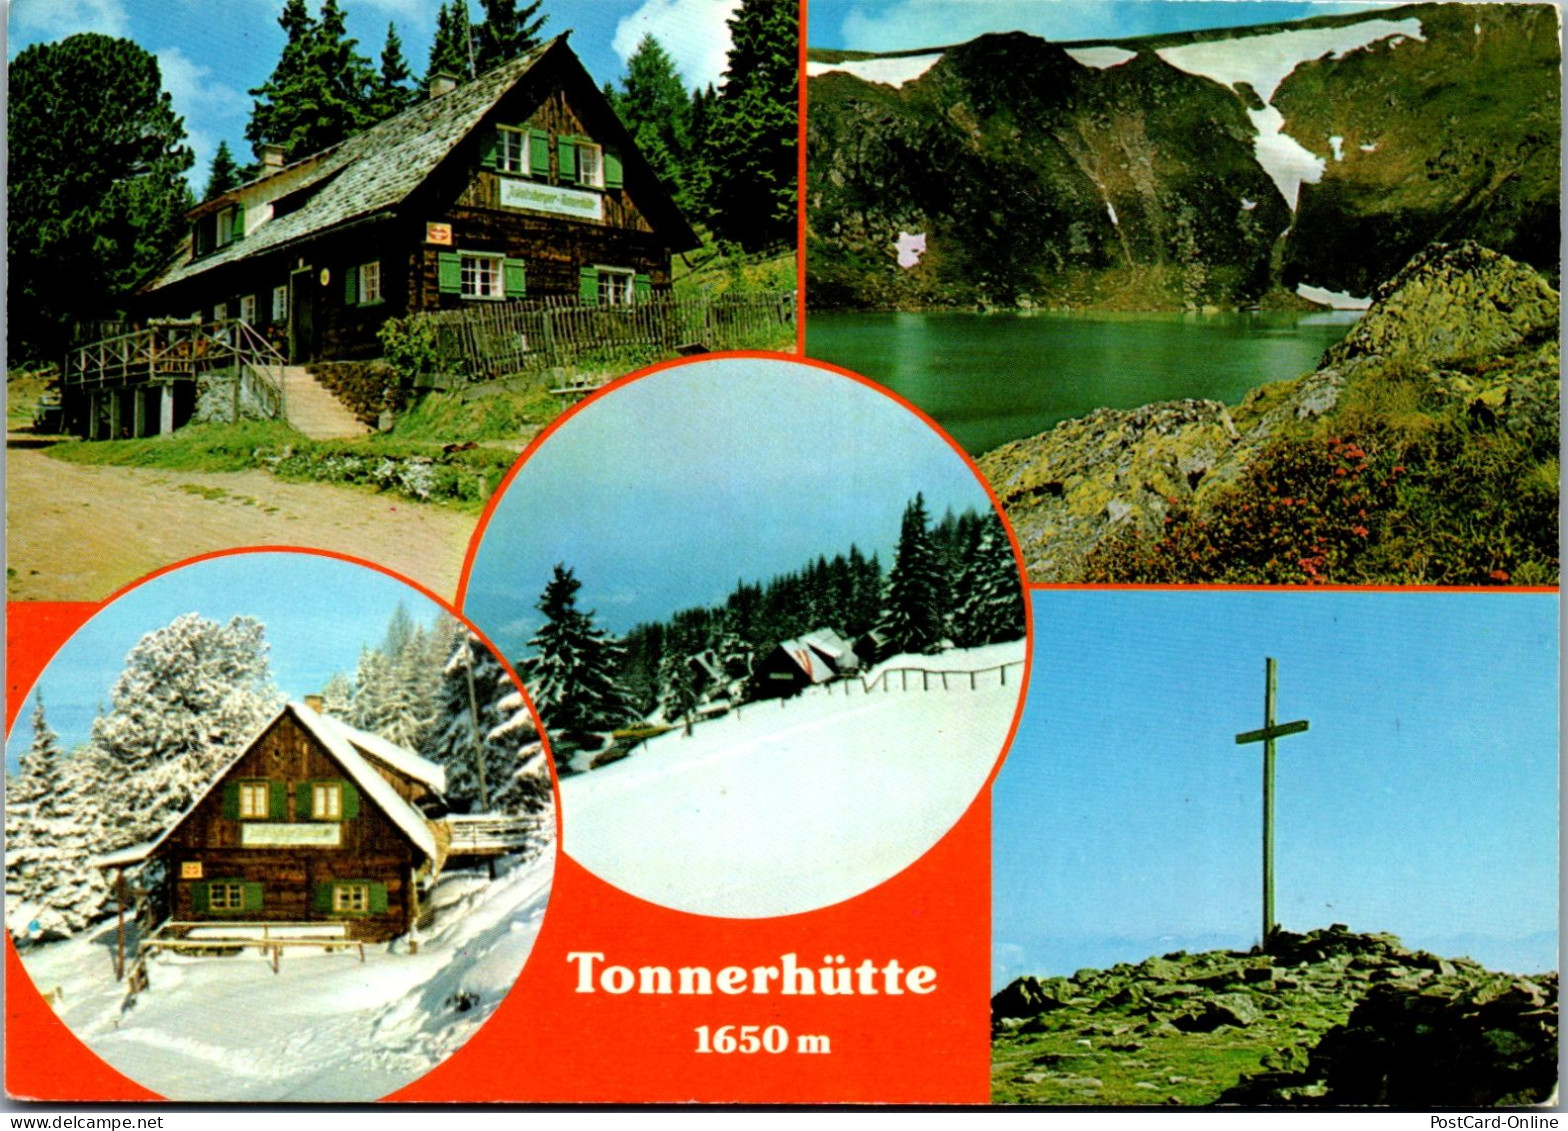 50115 - Steiermark - Mühlen , Tonnerhütte Jakobsberg , Mehrbildkarte - Gelaufen 1981 - Neumarkt